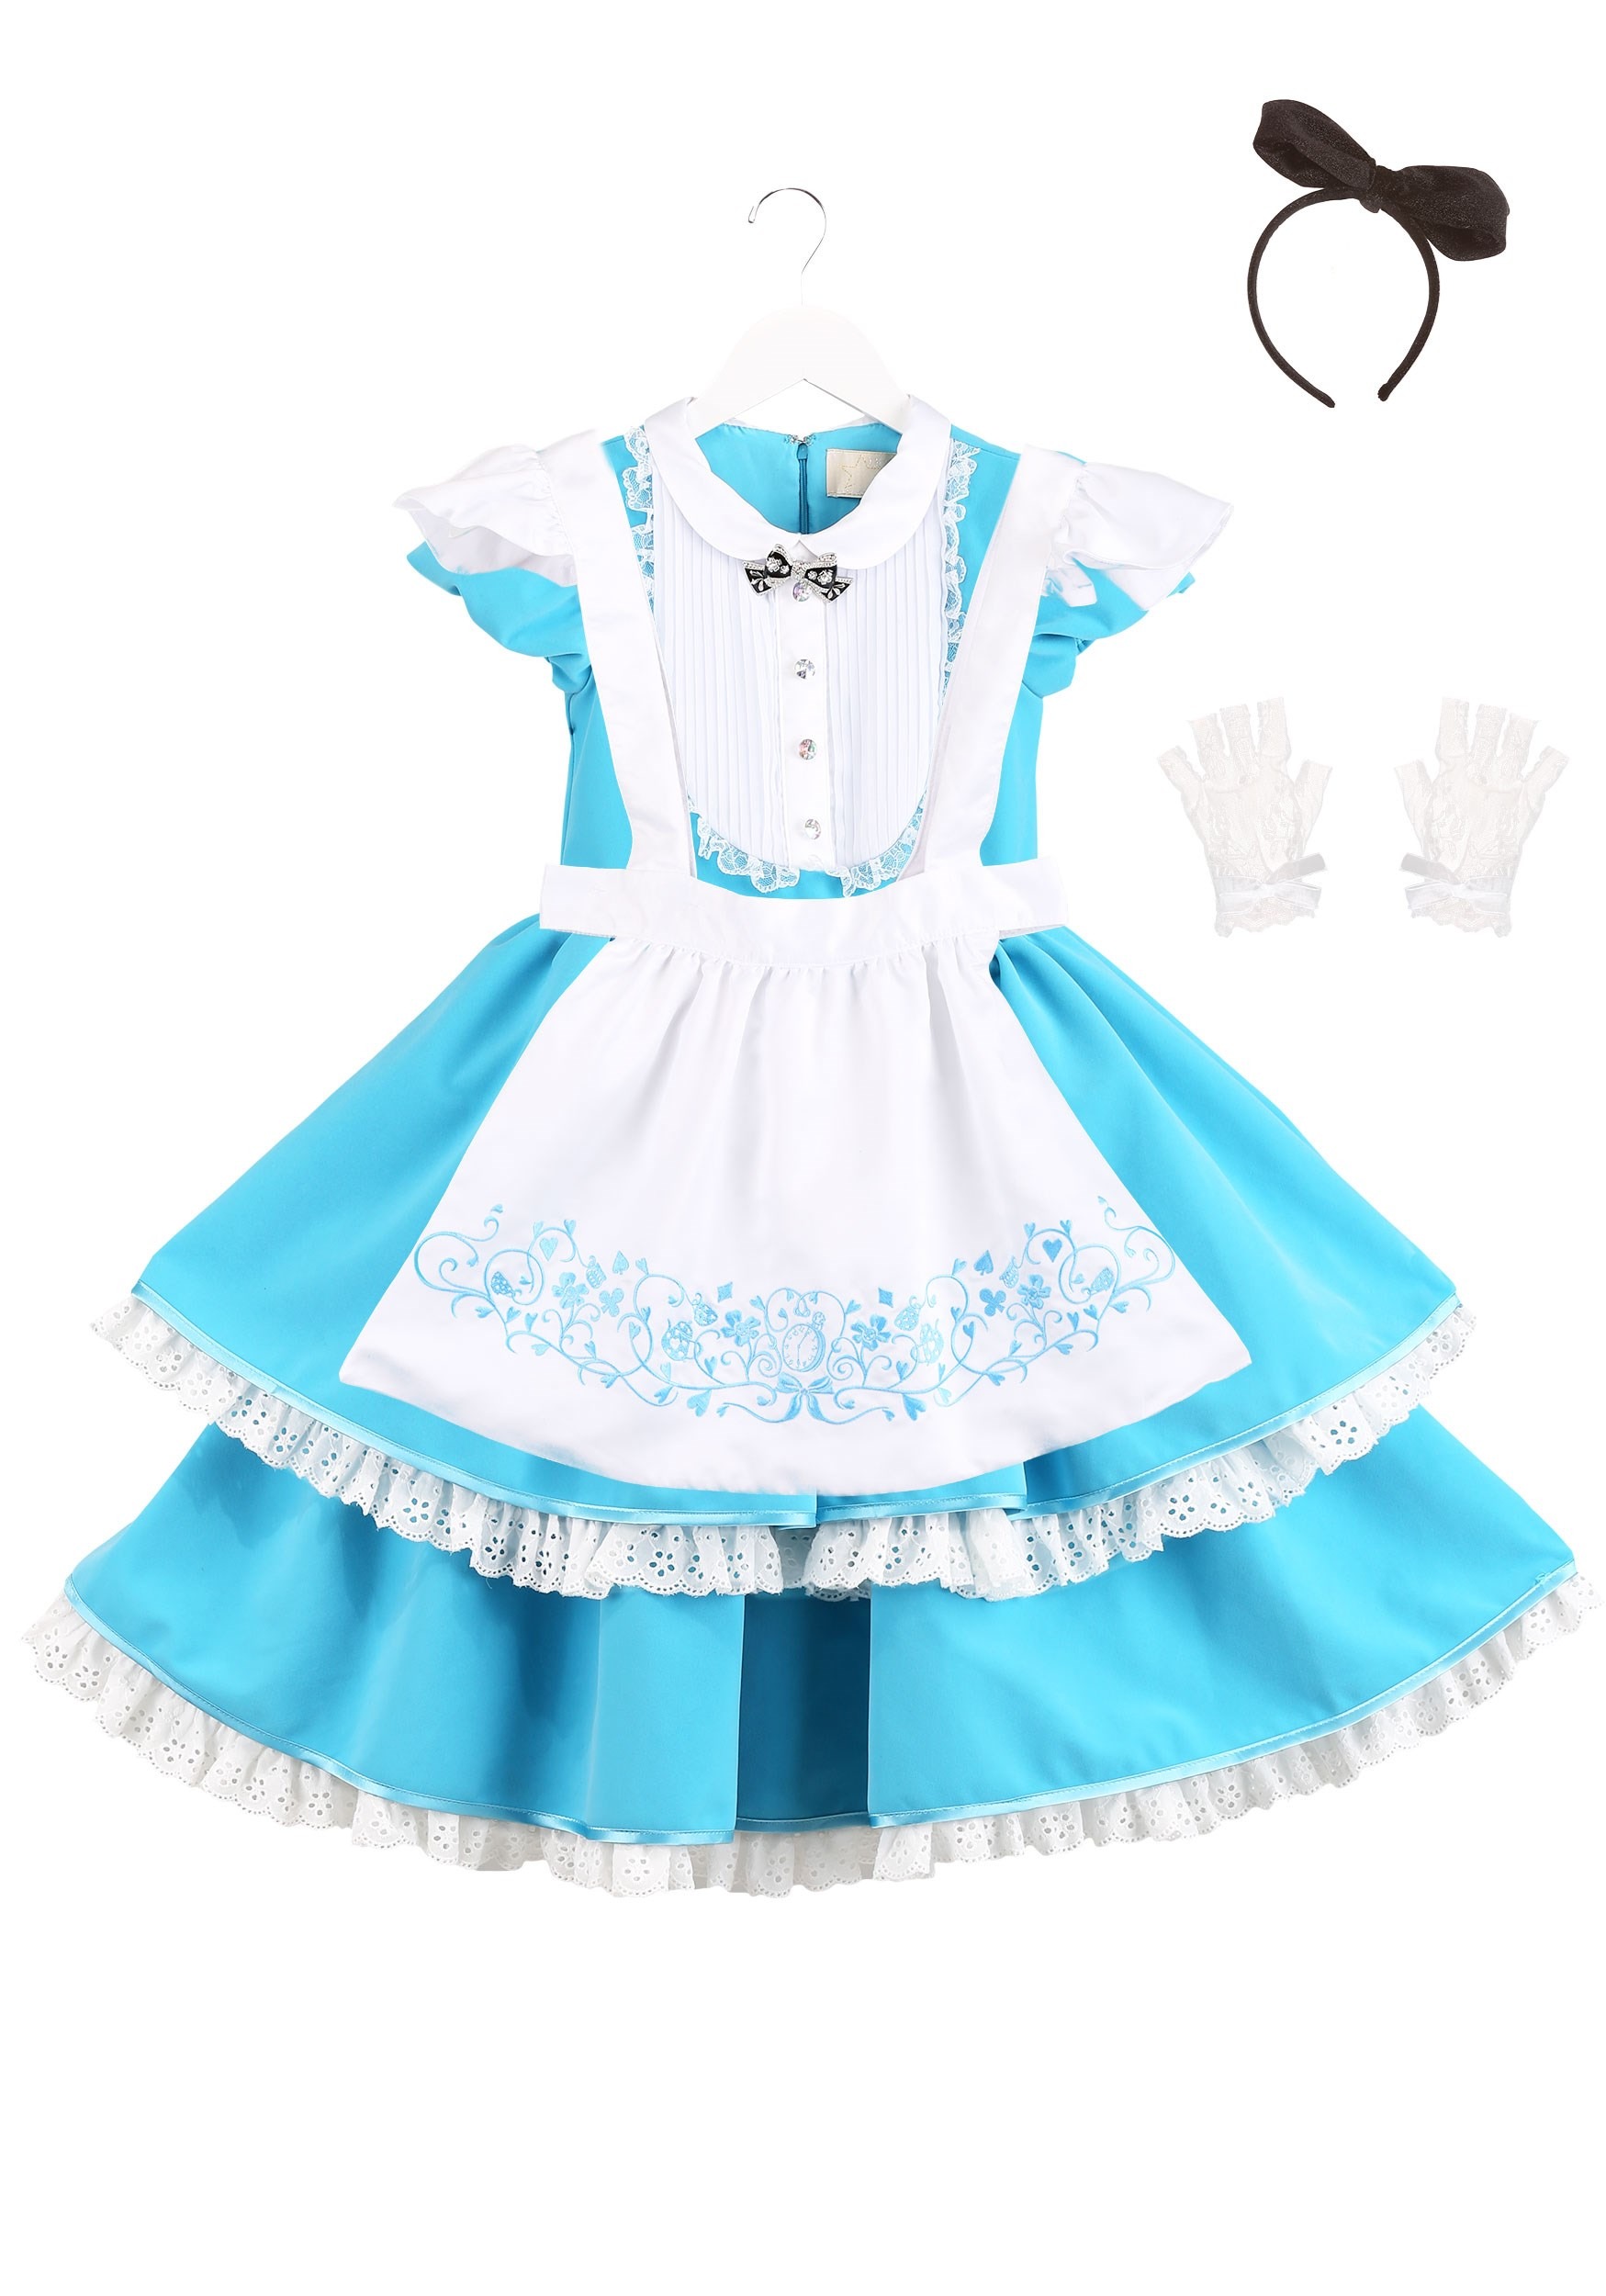 Premium Alice Costume for Girls